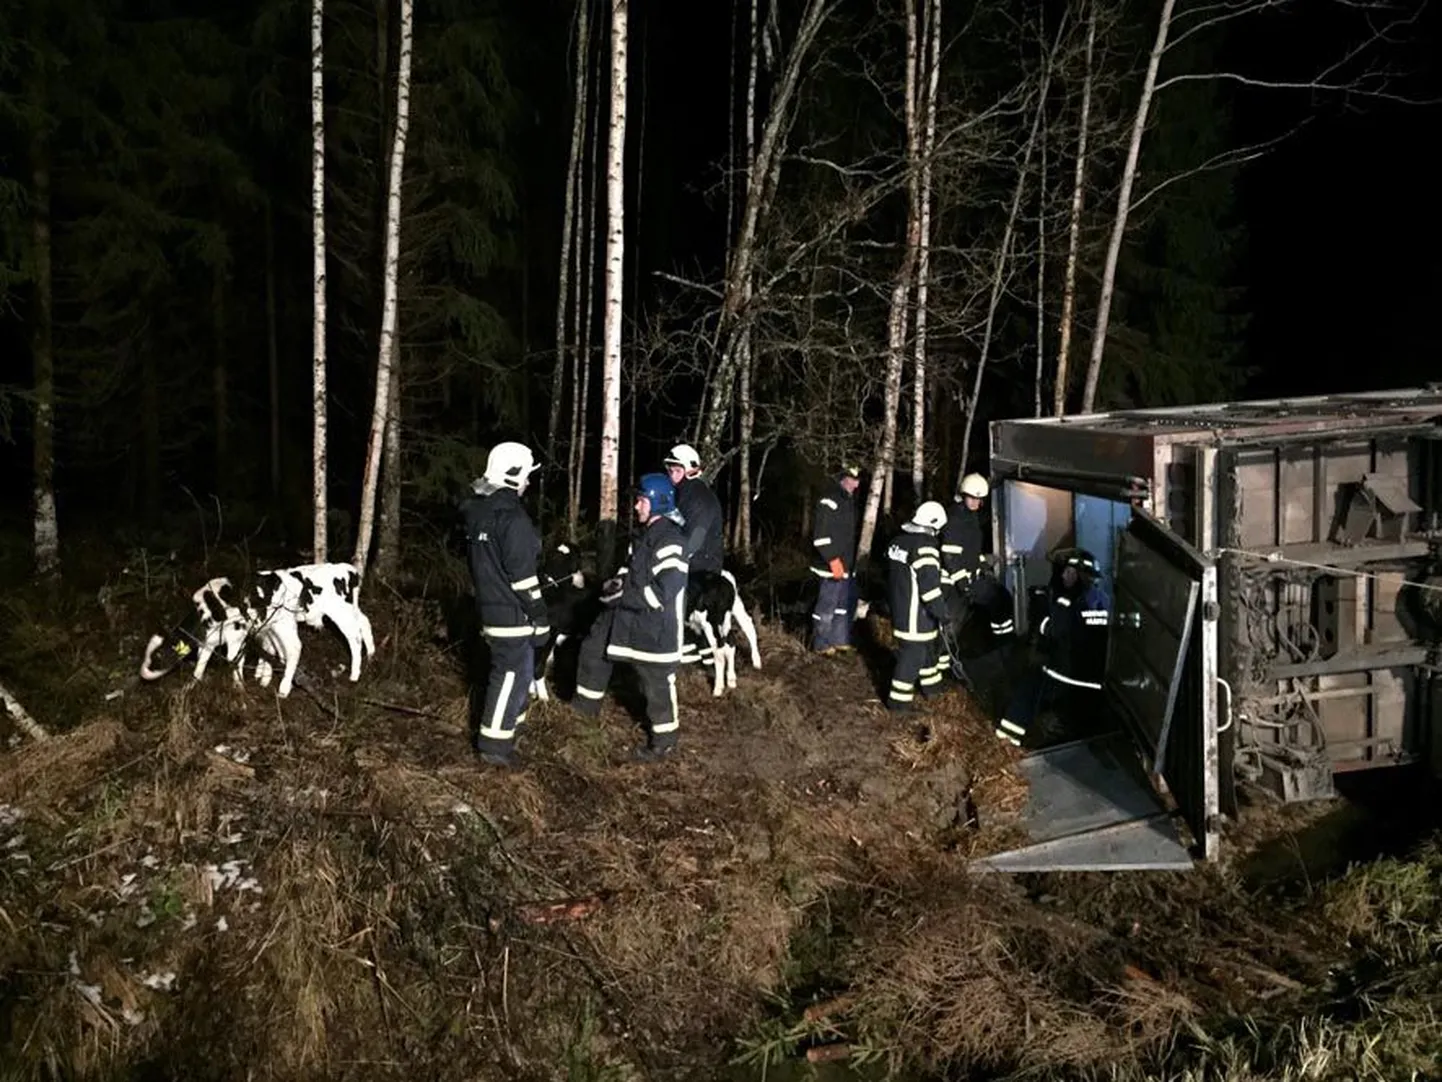 Volvo loomaveok vajus jäiselt teelt kraavi külili, misjärel hukkus ligi 30 looma.